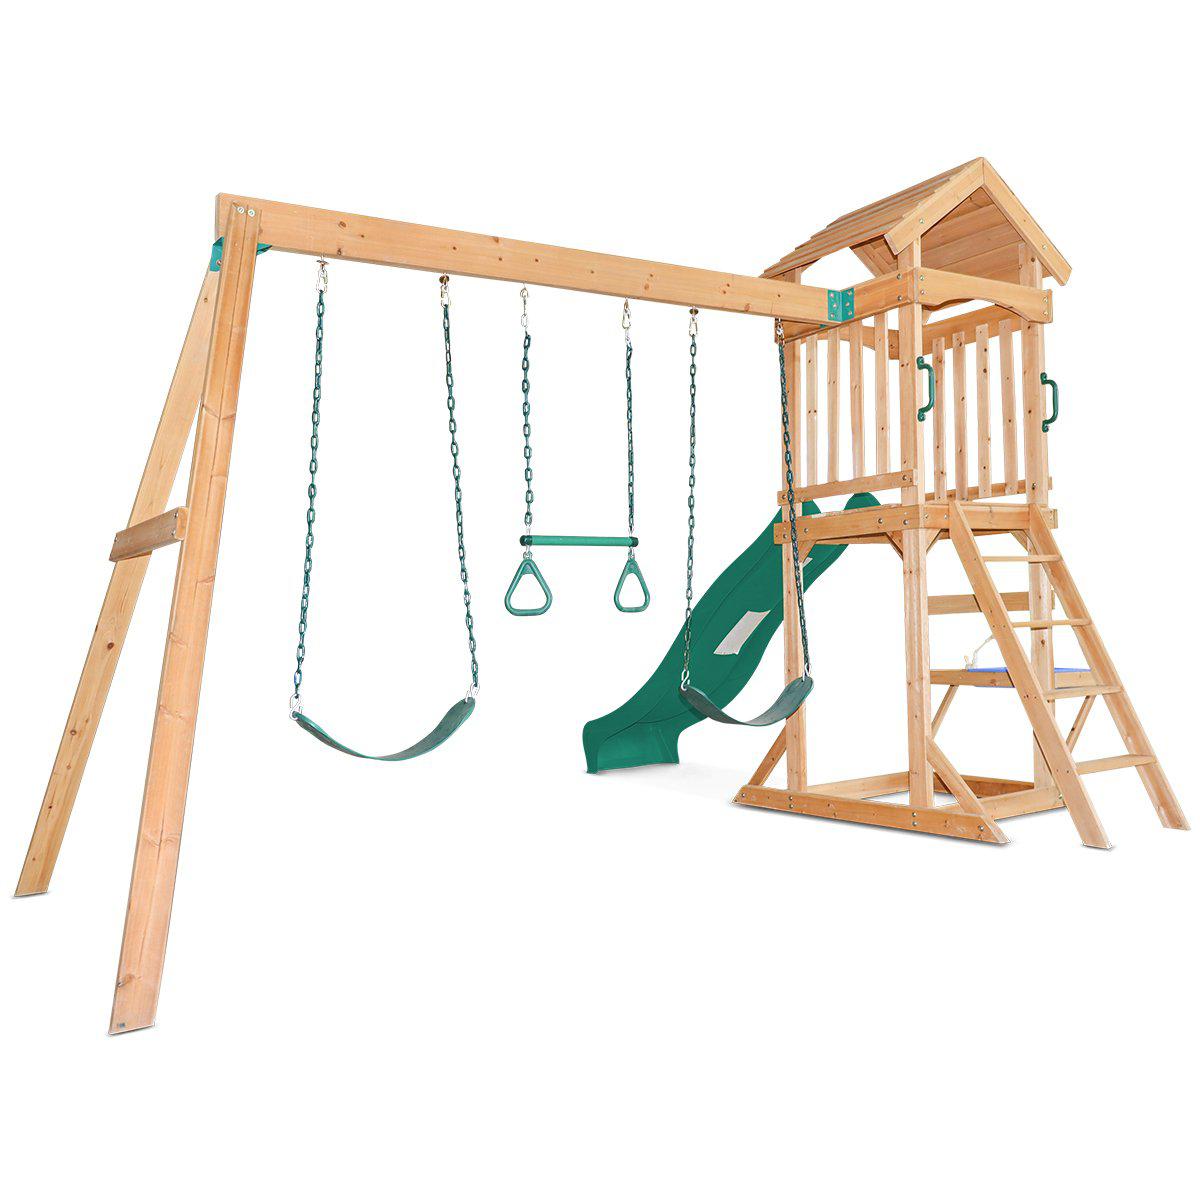 Albert Park Swing Set with Slide: Active Playtime for Children